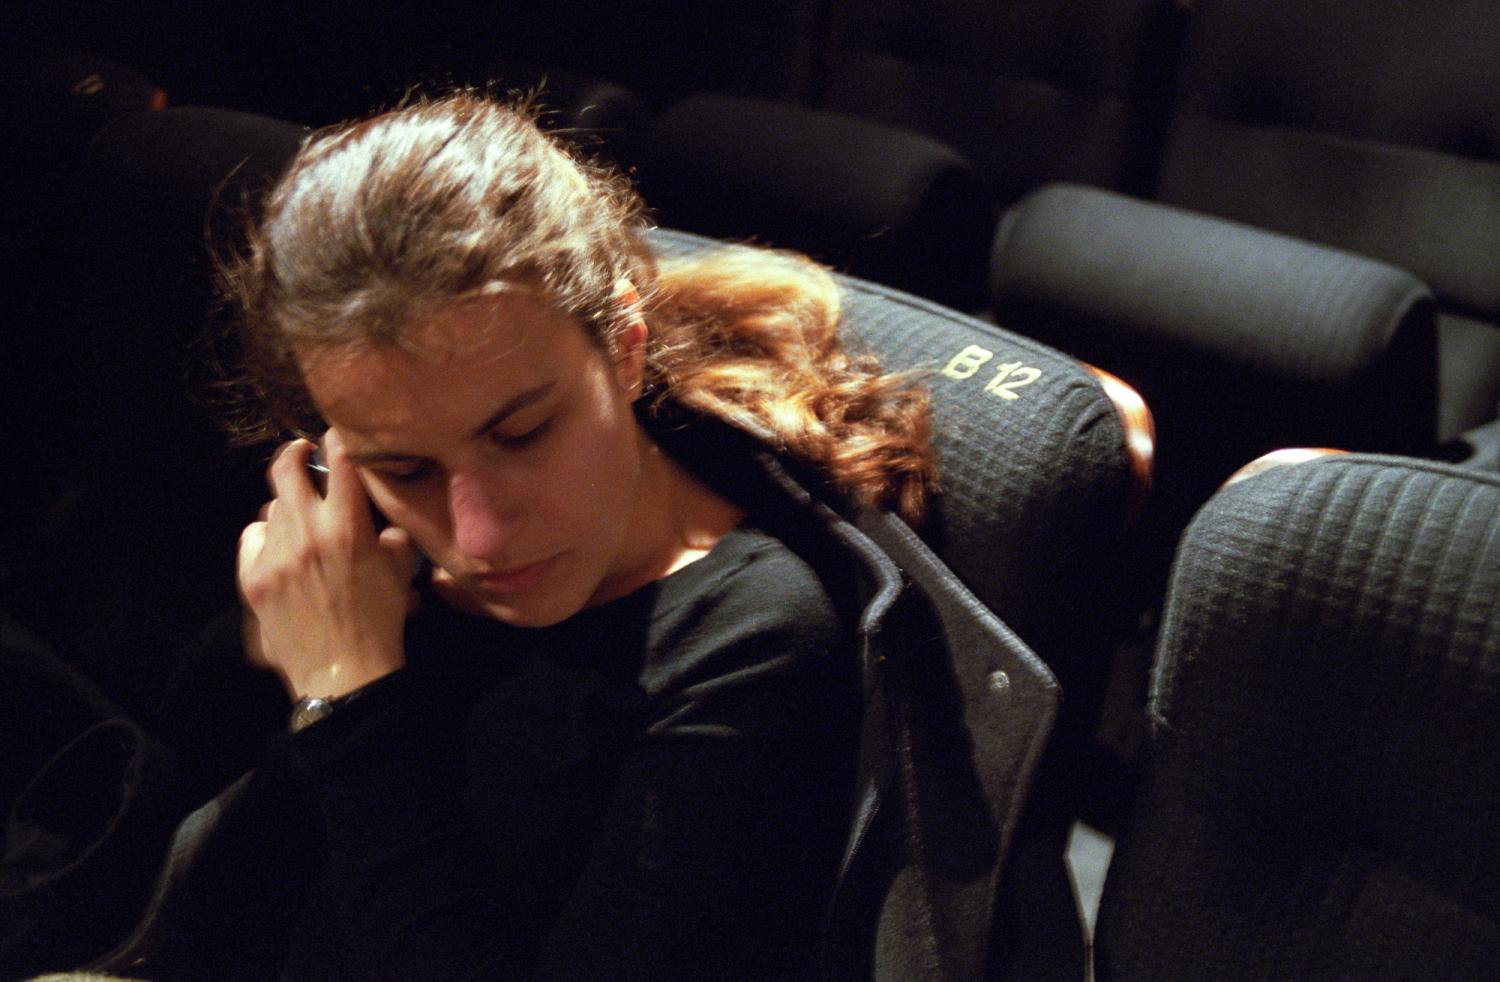 Céline dans un fauteuil de cinéma, la tête légèrement penchée vers son téléphone qu'elle tient à deux mains près de son oreille pour l'arrêter. Paris, mars 2006.